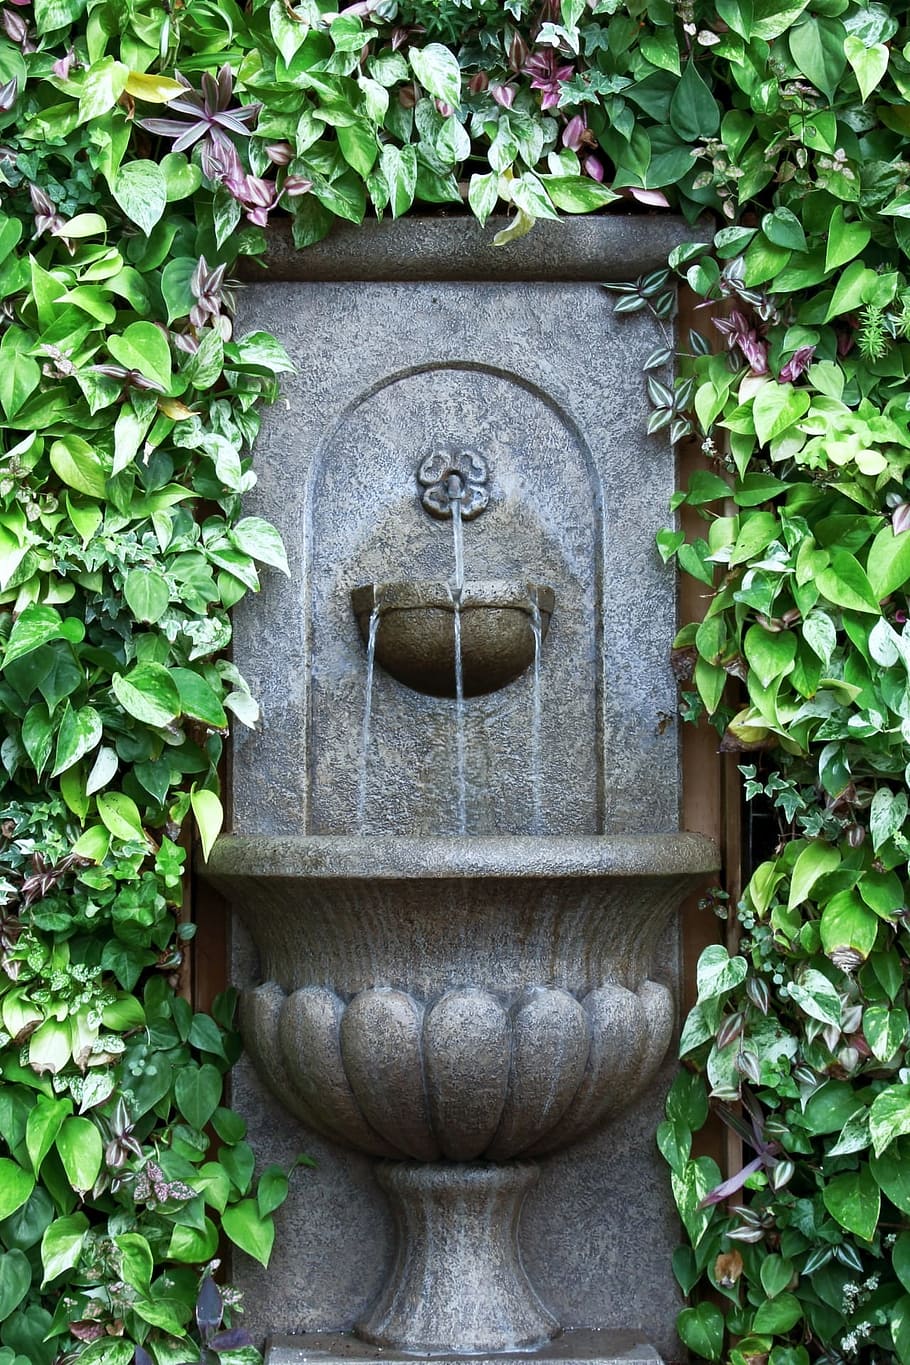 噴水, 壁の噴水, 緑, 壁, 水, 水が流れる, 涼しい, 穏やかな, さわやかな, 植物の部分